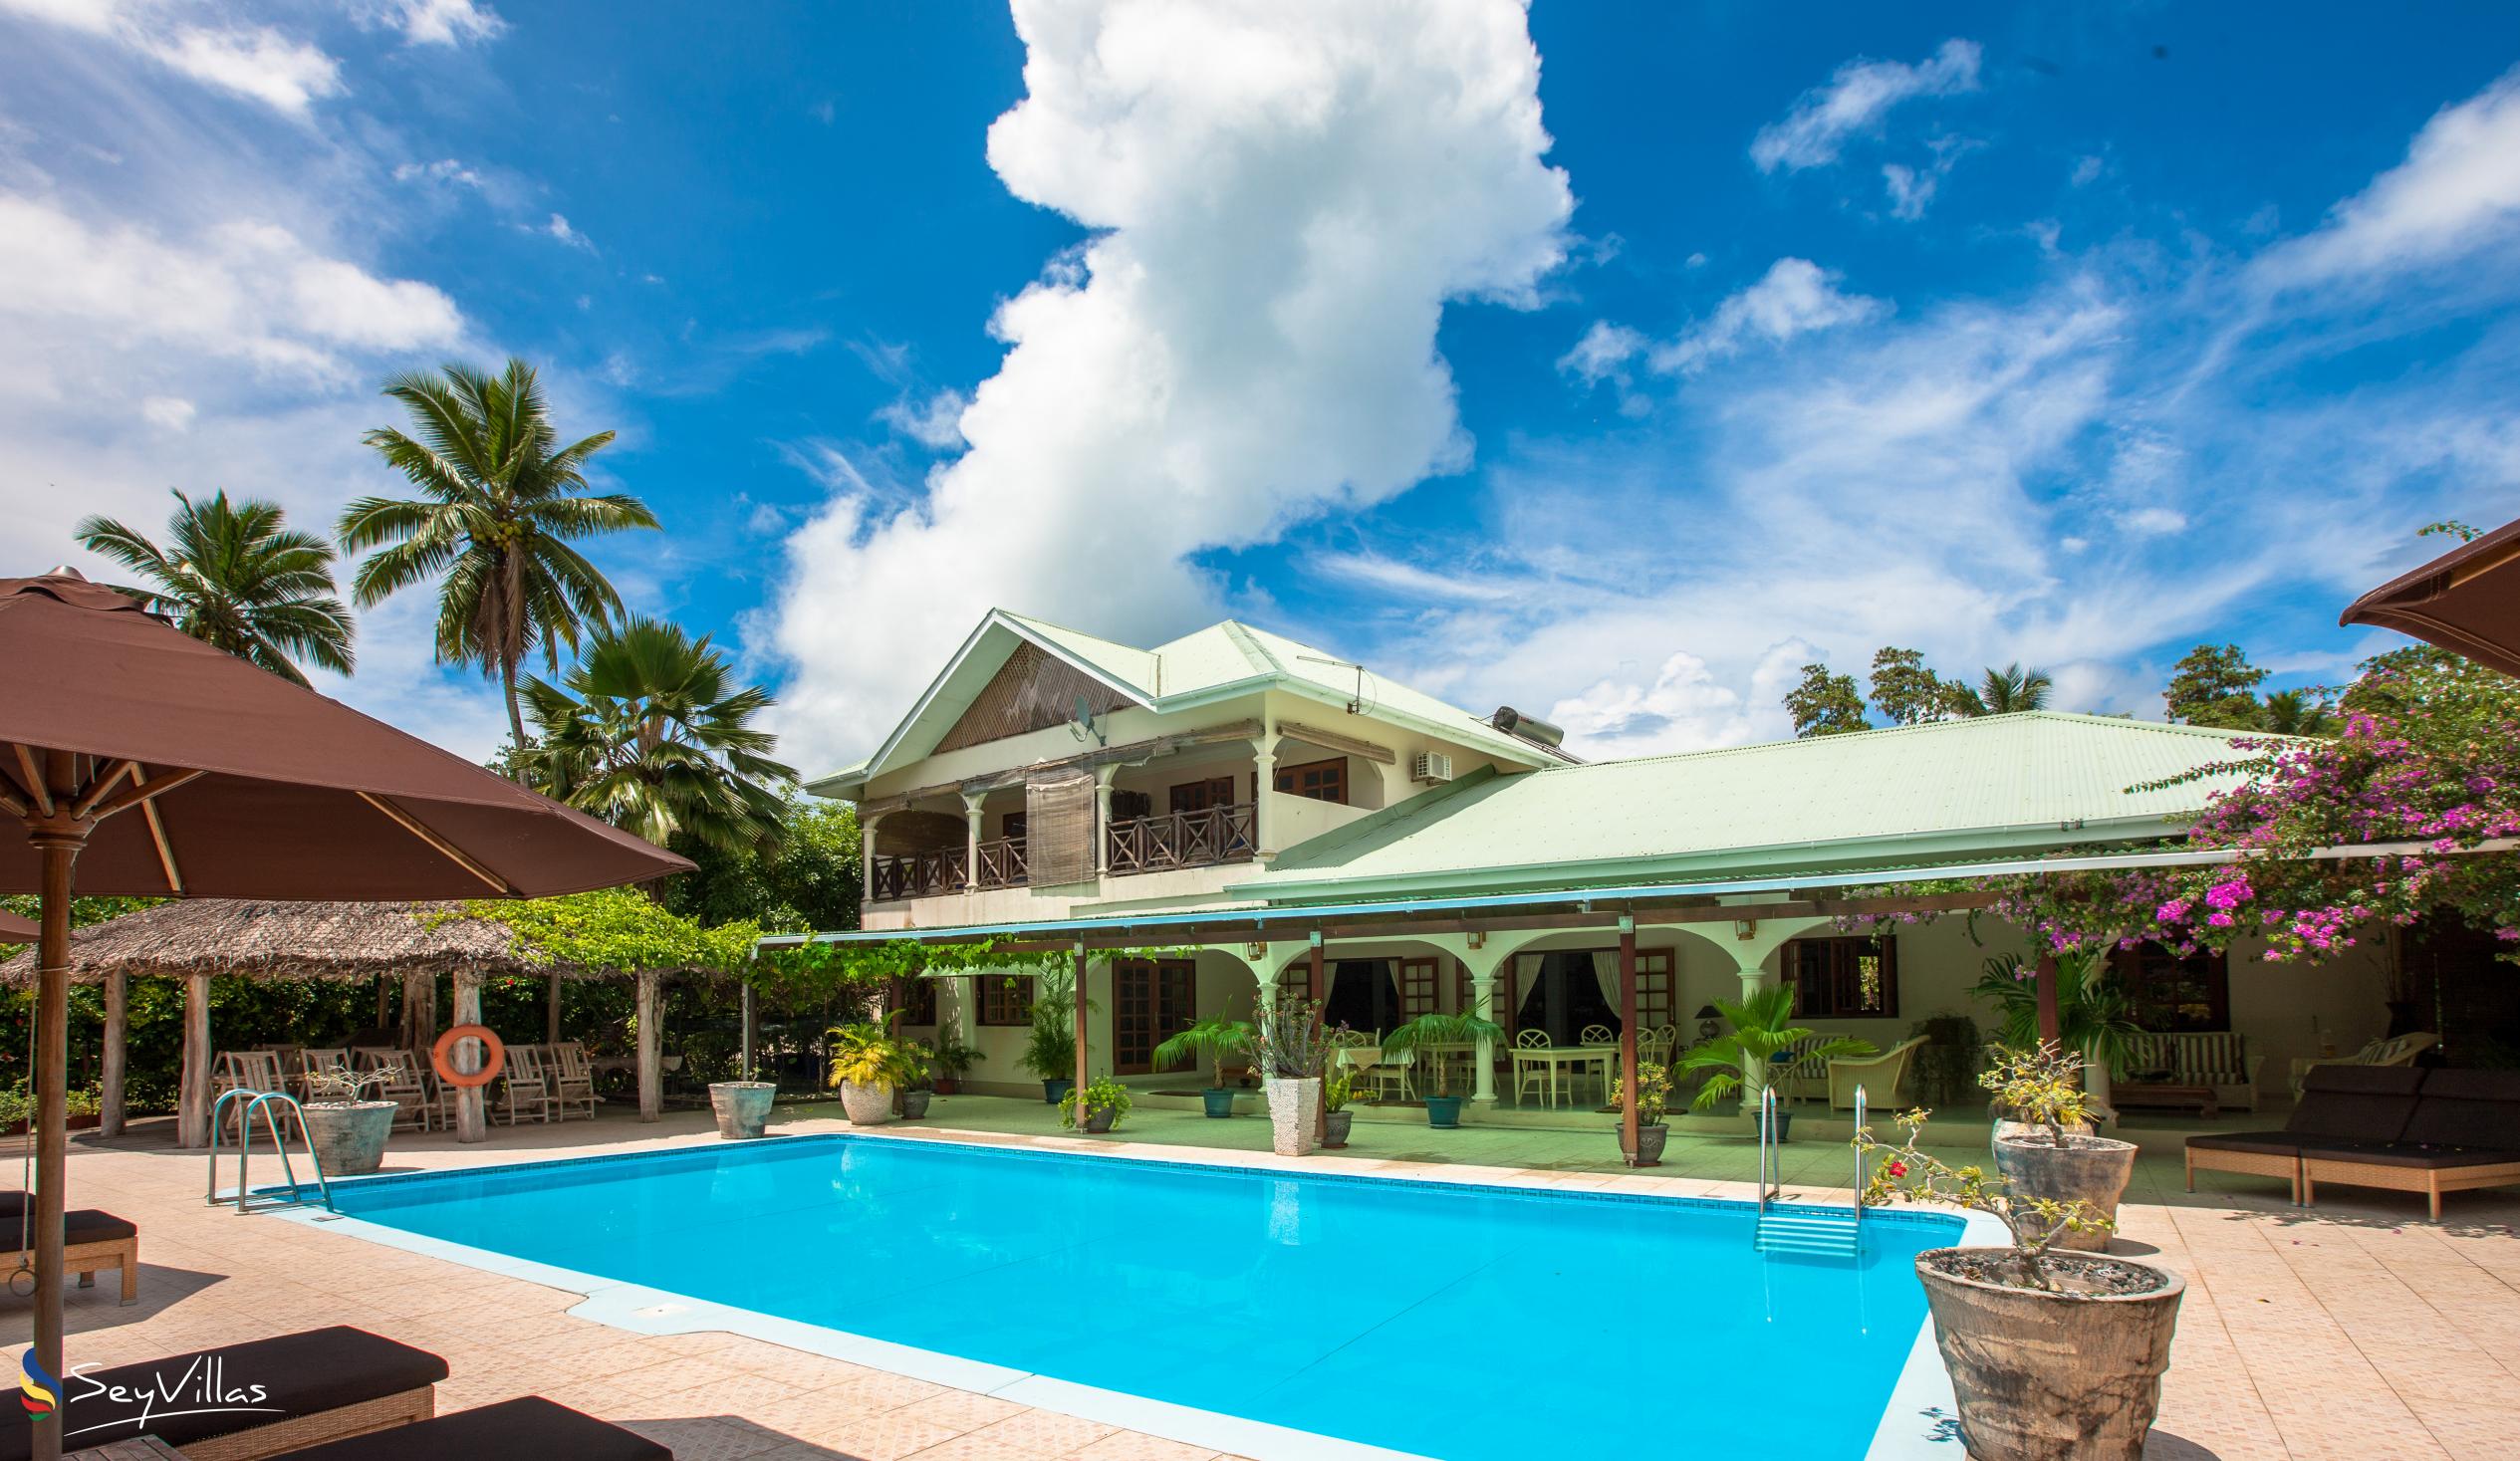 Foto 3: Villa de Cerf - Extérieur - Cerf Island (Seychelles)